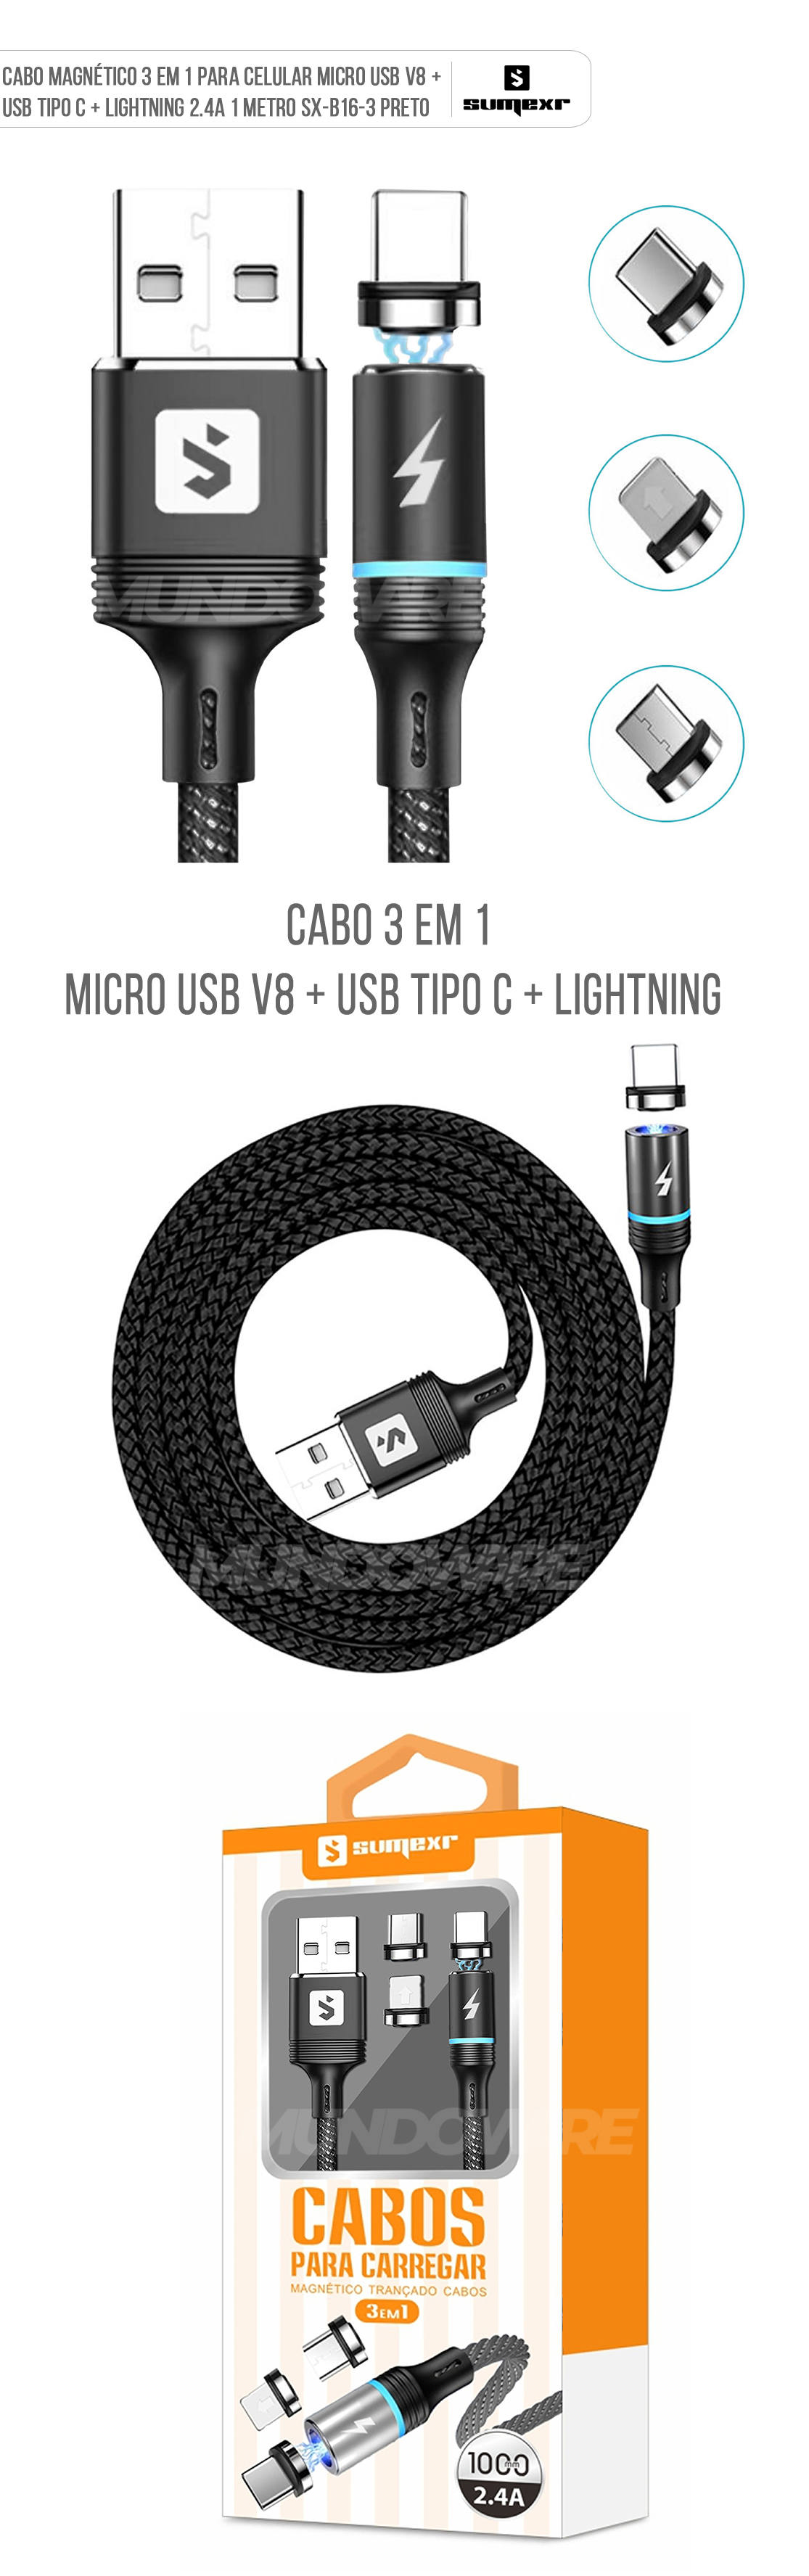 Cabo Magnético 3 em 1 para Celular Micro USB V8 + USB Tipo C + Lightning 2.4A 1 metro SX-B16-3 Preto